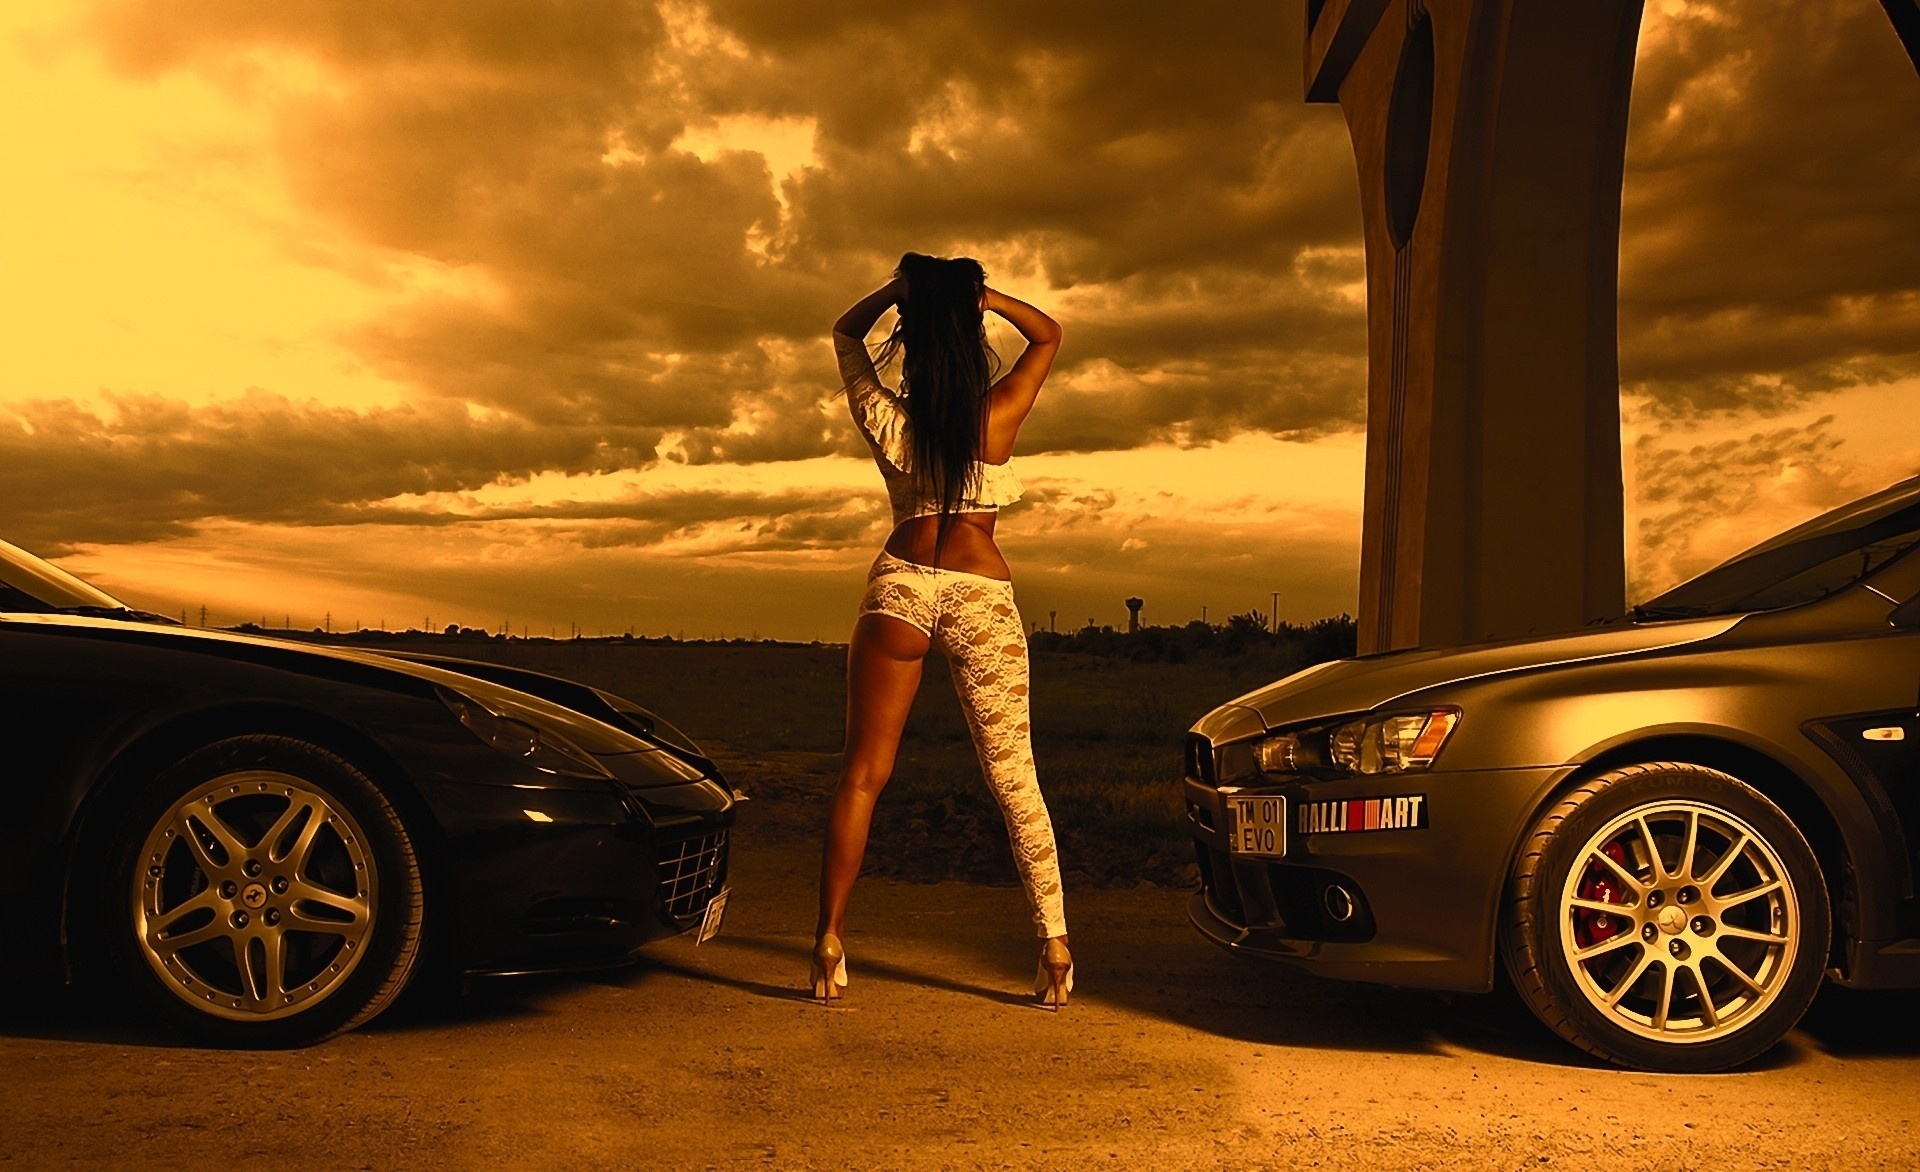 Картинка: Девушка, спина, стоит, Митцубиси, Феррари, автомобили, закат, небо, облака, горизонт